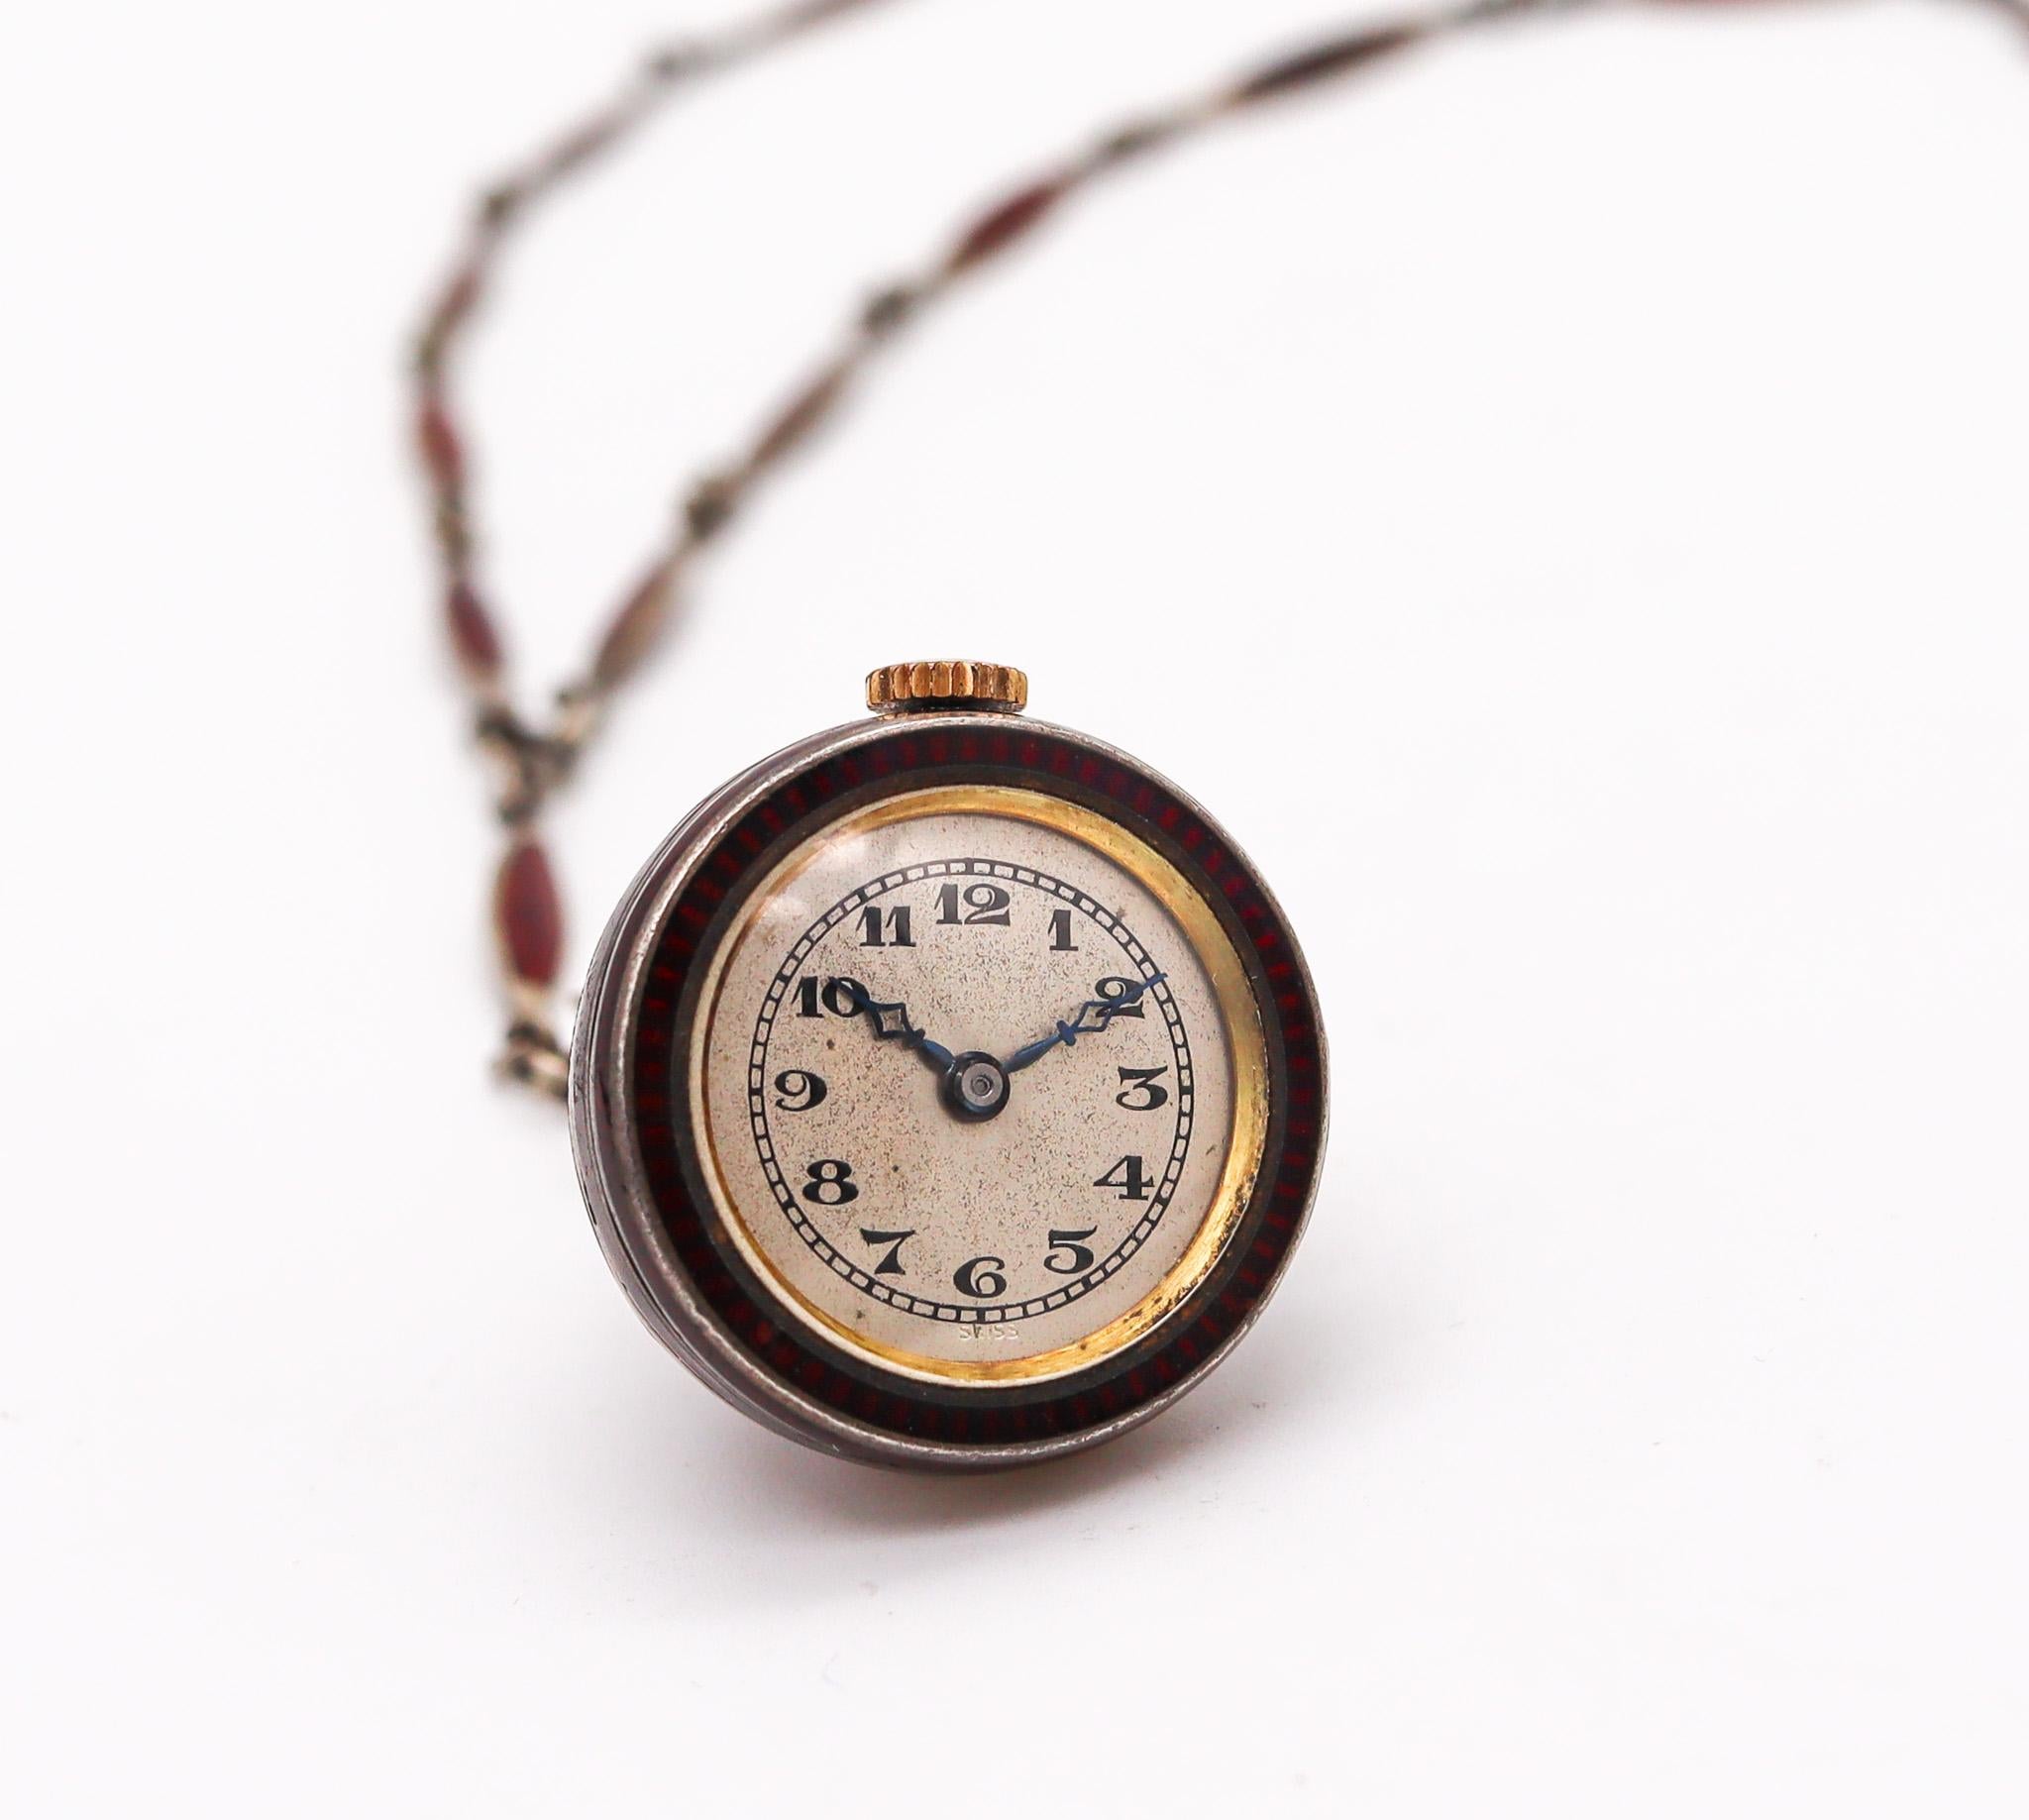 Art-Deco-Lavalier-Halskette mit Uhr.

Wunderschönes Lavalier-Halsband aus der Zeit des Art déco in der Schweiz, um 1920. Sorgfältig aus massivem, hochreinem .985/.999er Silber gefertigt und mit Applikationen aus roter Emaille über einer